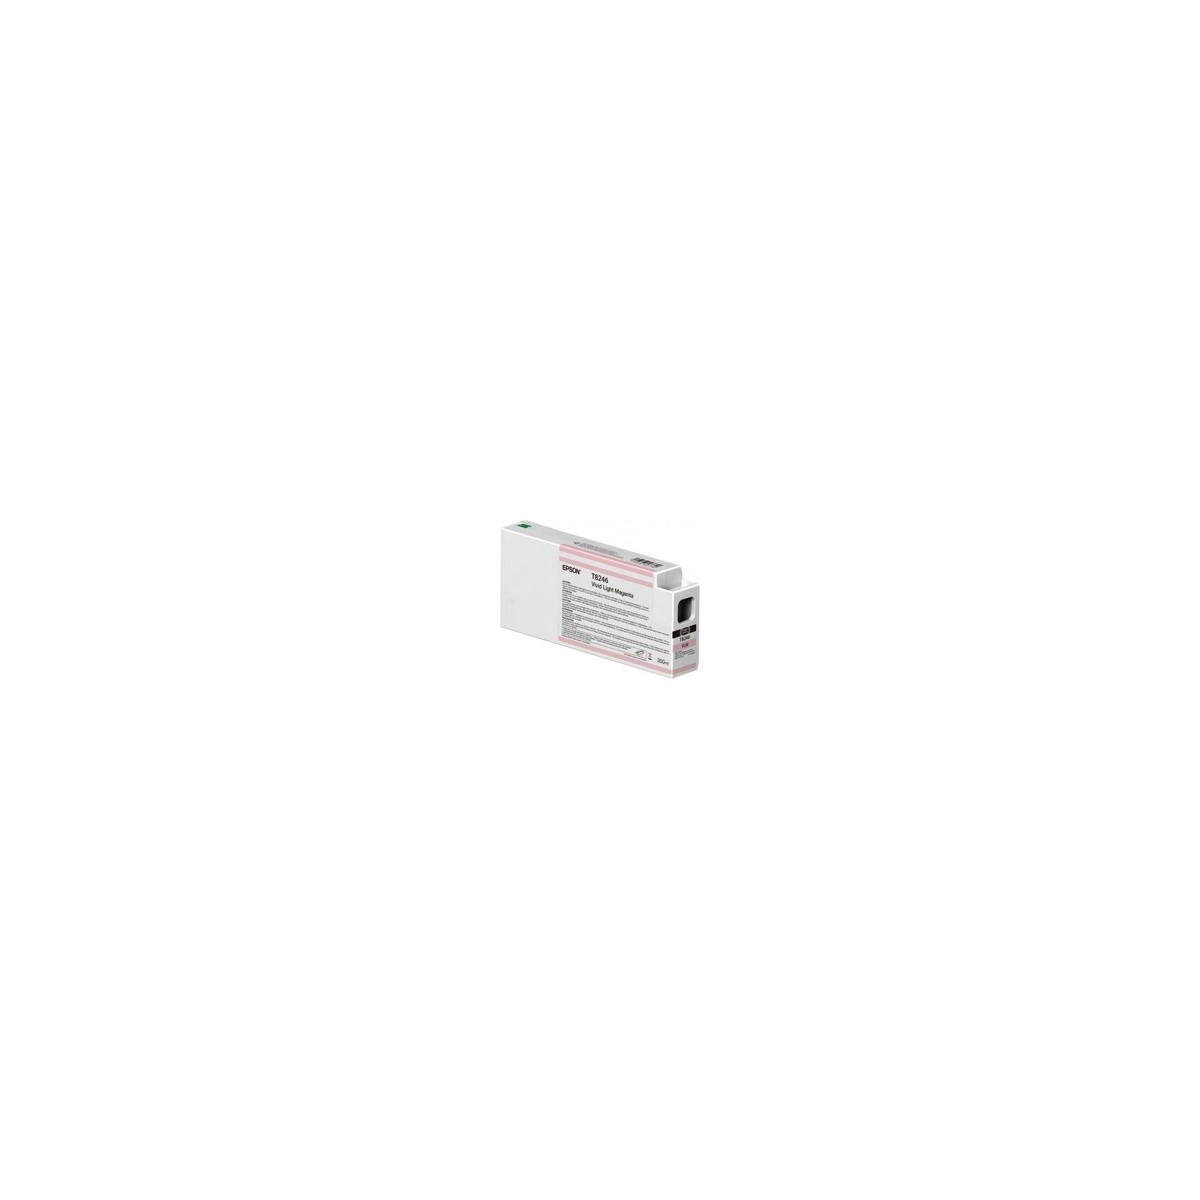 Epson Singlepack Vivid Light Magenta T824600 UltraChrome HDX-HD 350ml - Pigment-based ink - 350 ml - 1 pc(s)